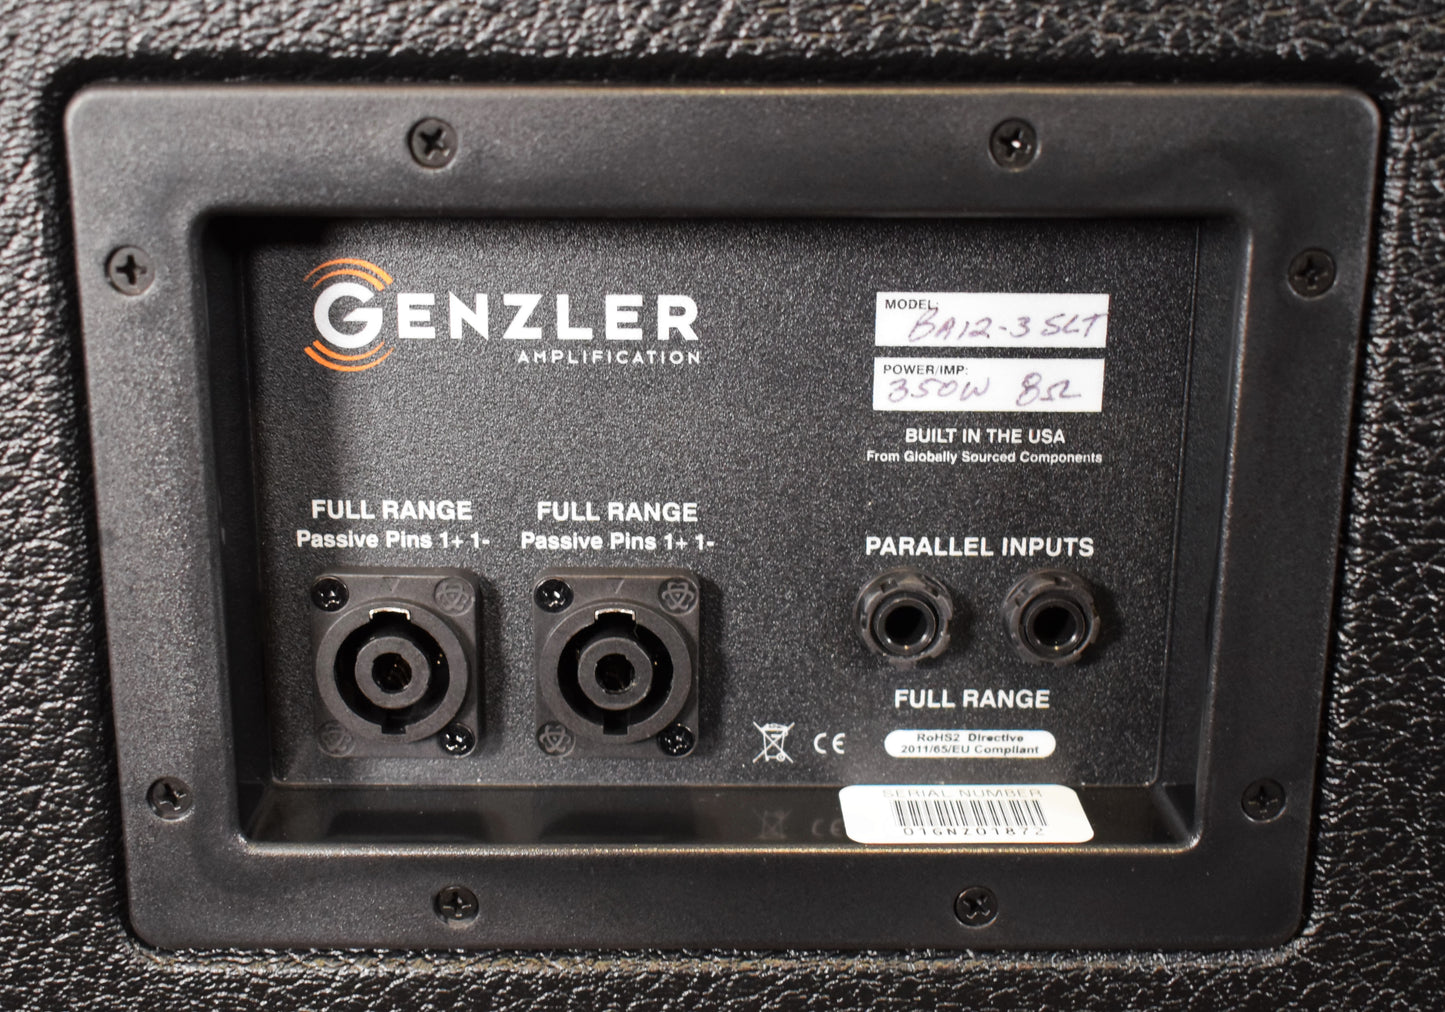 Genzler BA12-3 SLT SLANT  NEO 12” & 4X3”Array 350 Watt 8 ohm Bass Amplifier Amplifier Speaker Cabinet Demo